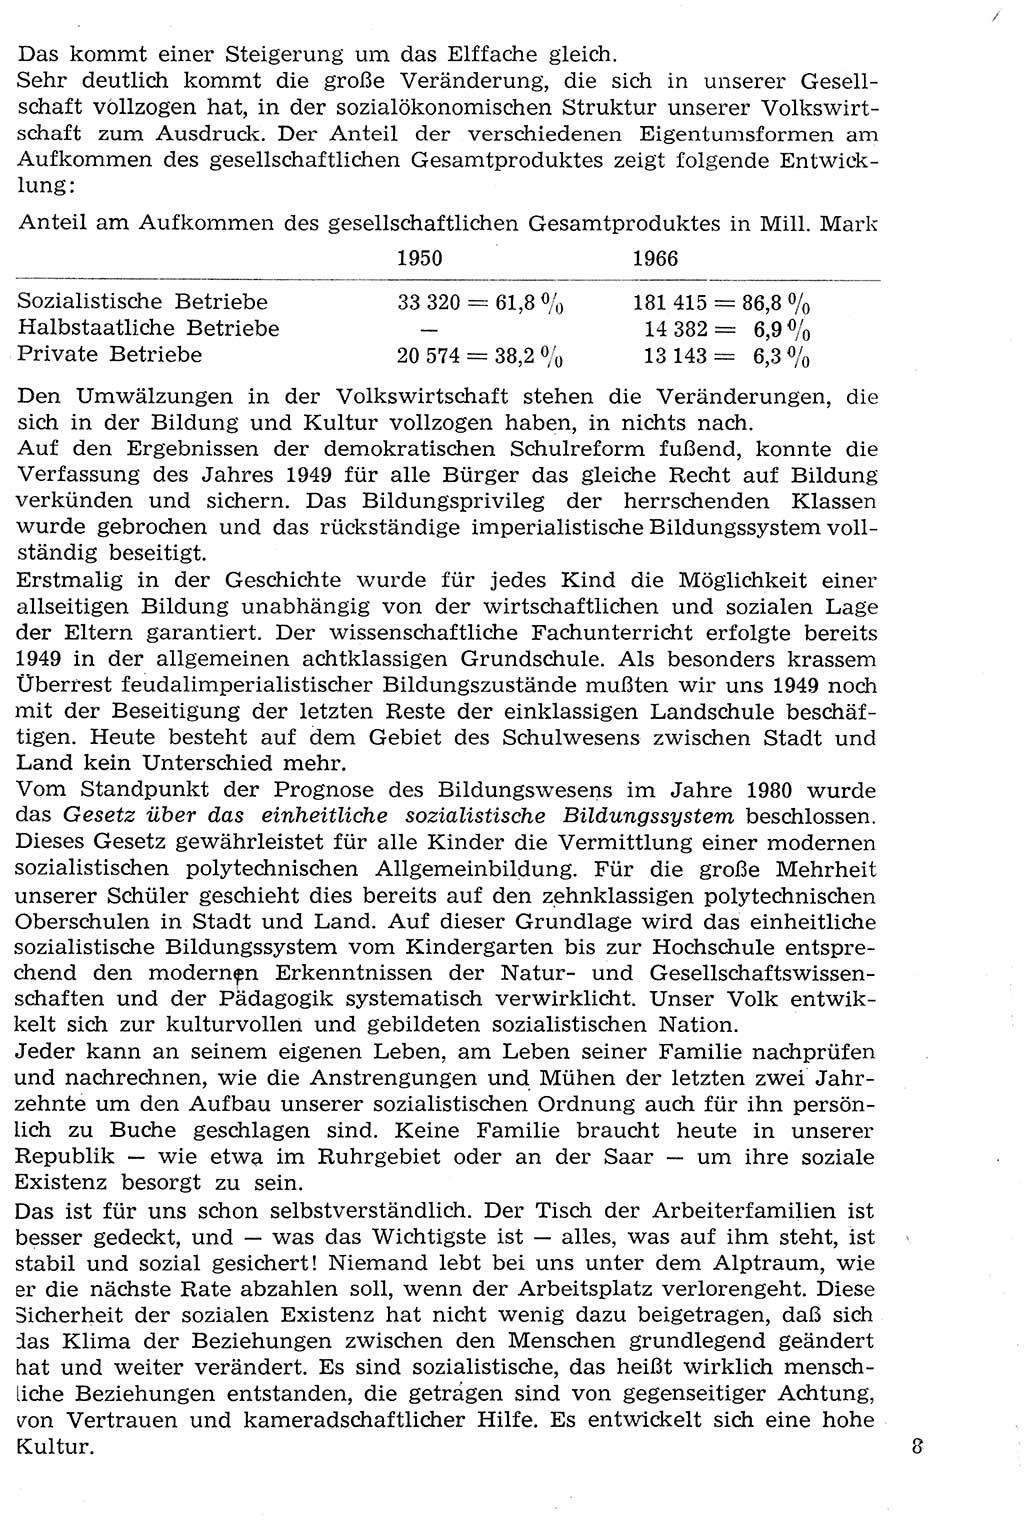 Staat und Recht (StuR), 17. Jahrgang [Deutsche Demokratische Republik (DDR)] 1968, Seite 8 (StuR DDR 1968, S. 8)